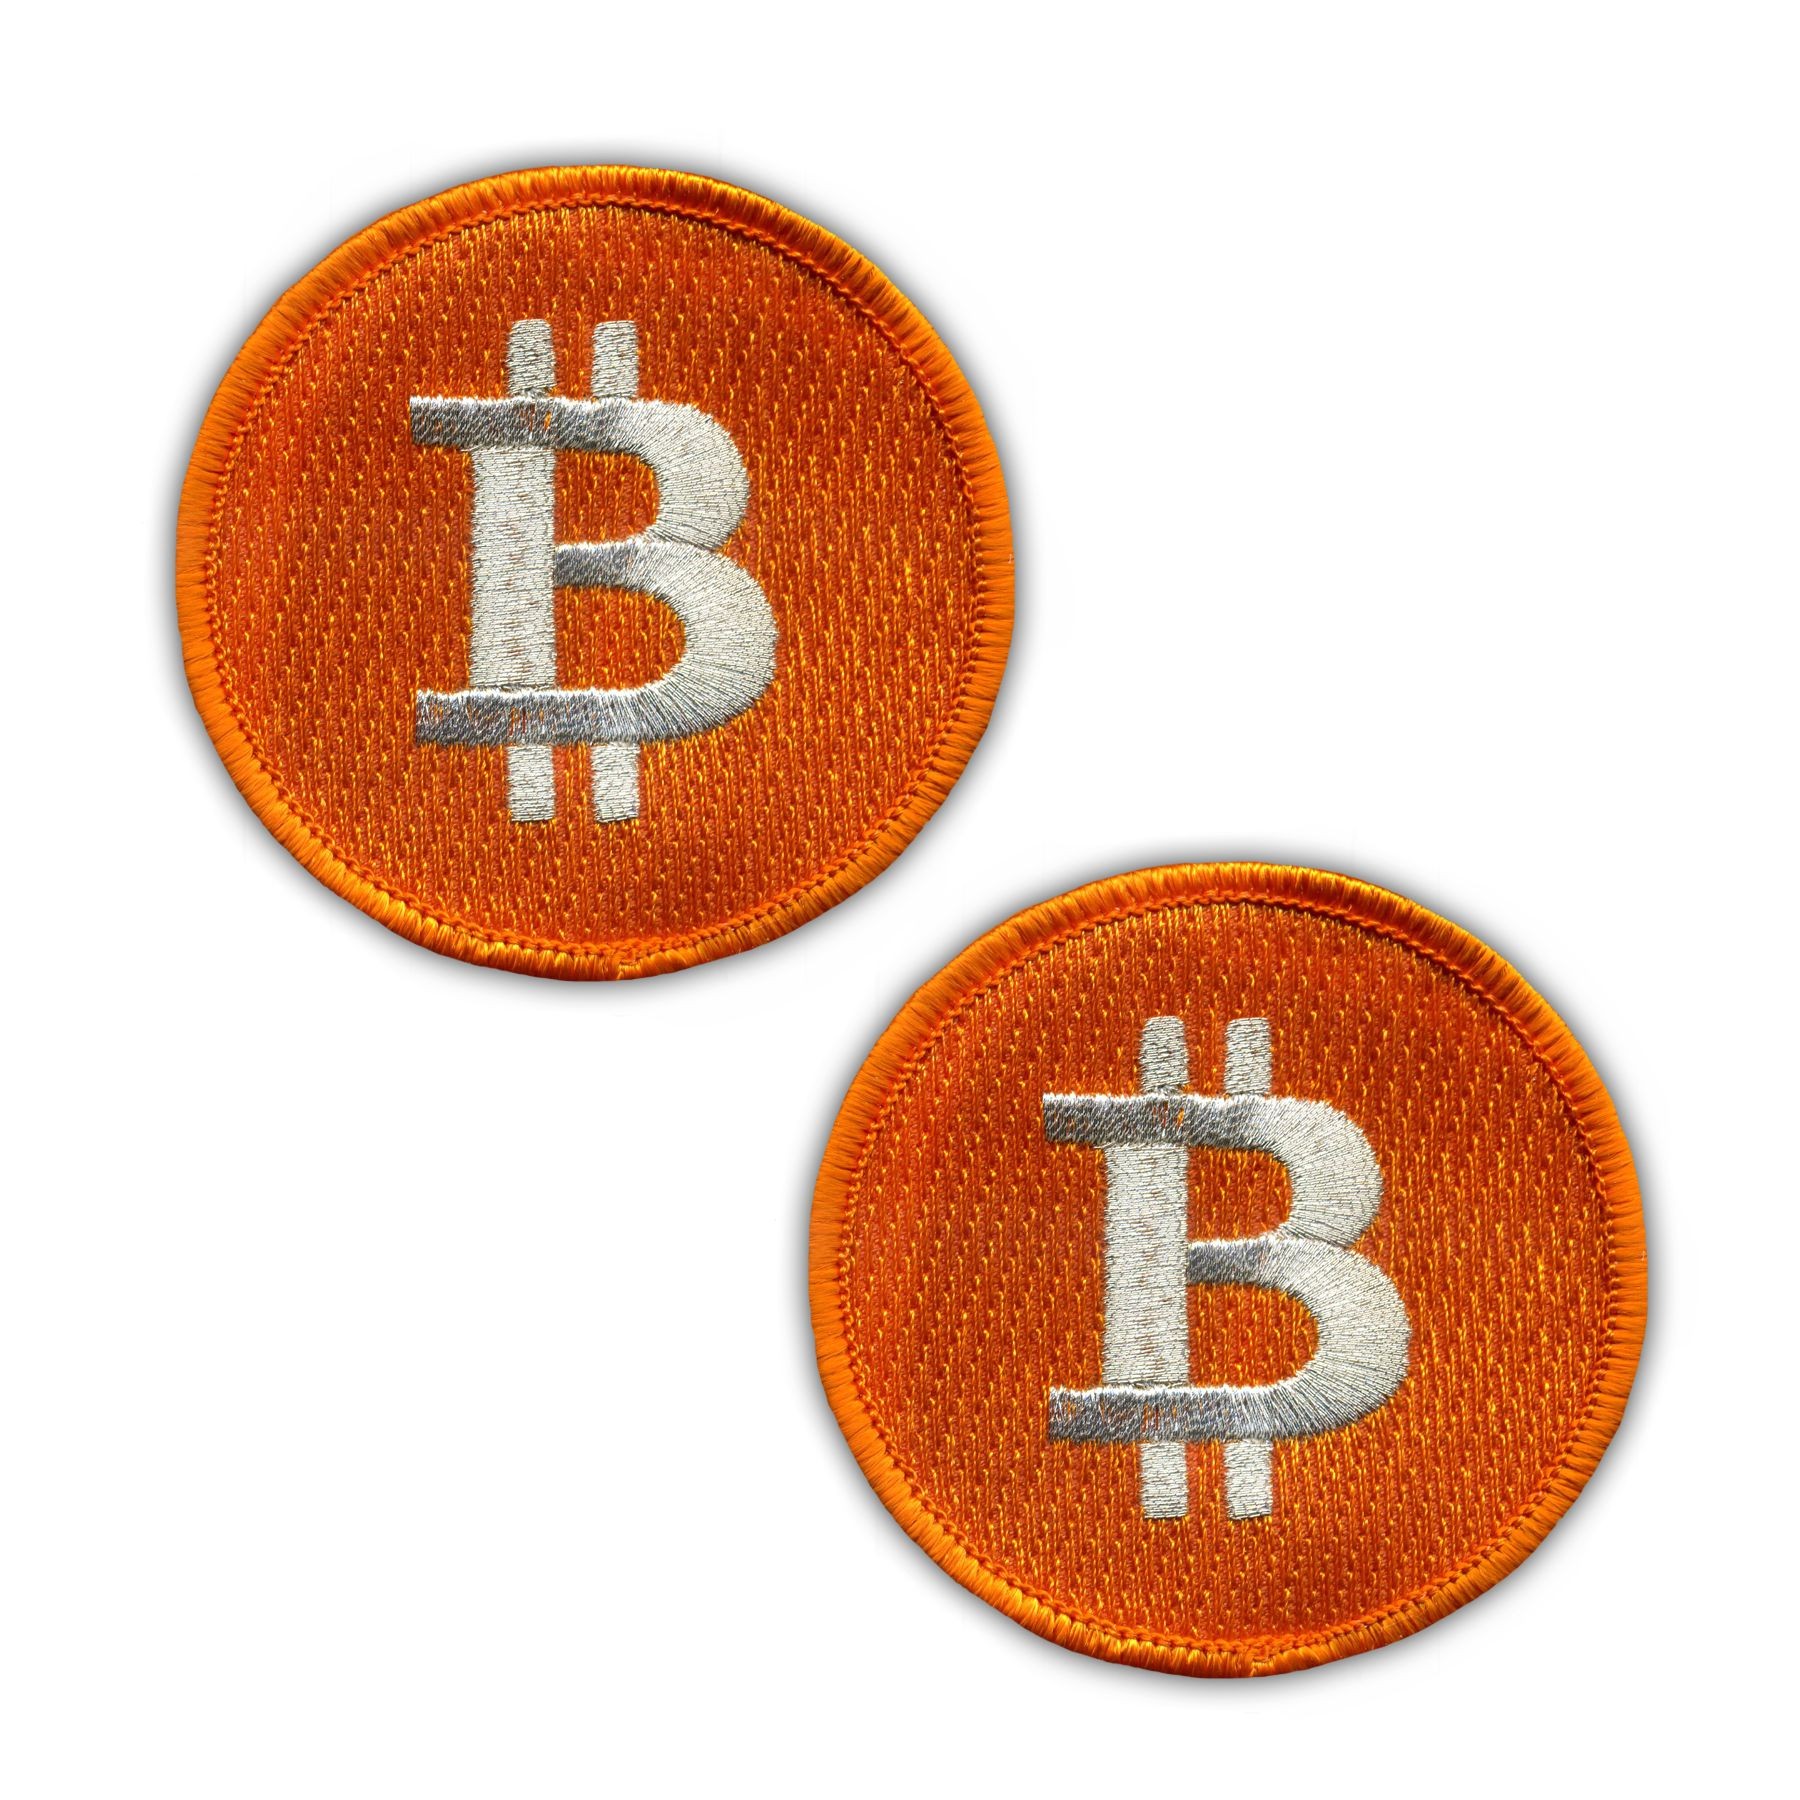 bitcoin patch parduoti bitcoin nz